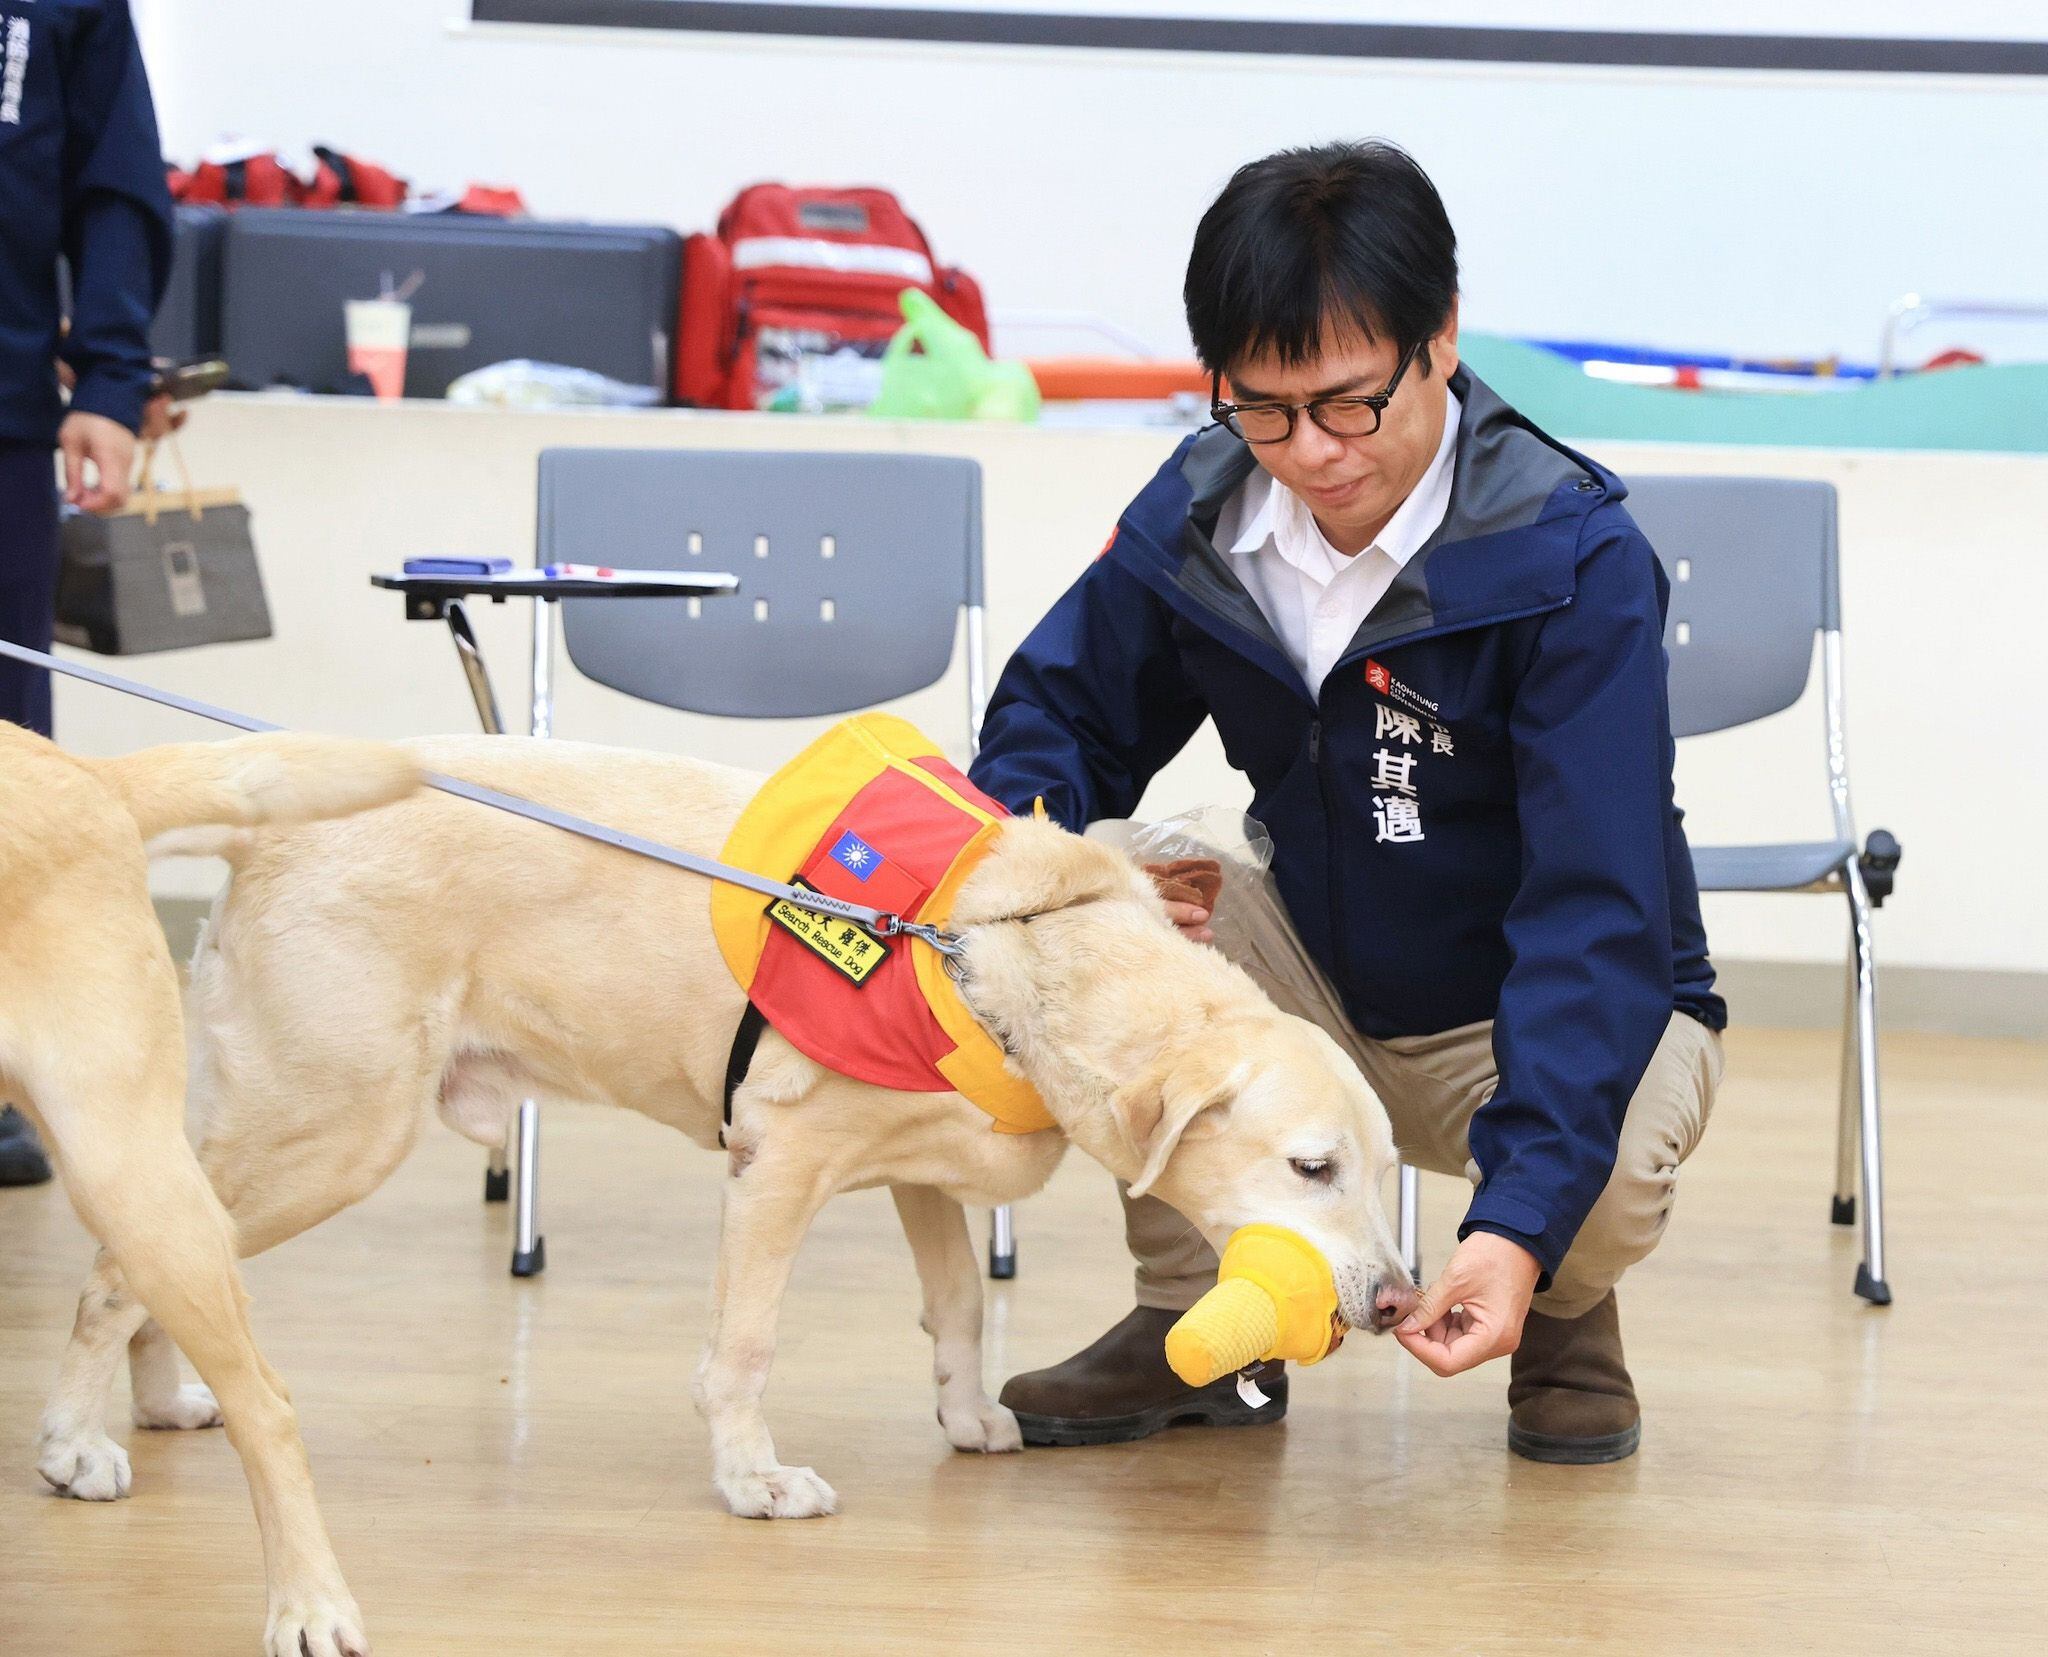 El alcalde de una ciudad de Taiwán reconoció la labor de Roger. (Facebook/Chen Chi-Mai) Roger, perros, razas de perros, búsqueda y rescate, perros anti drogas,